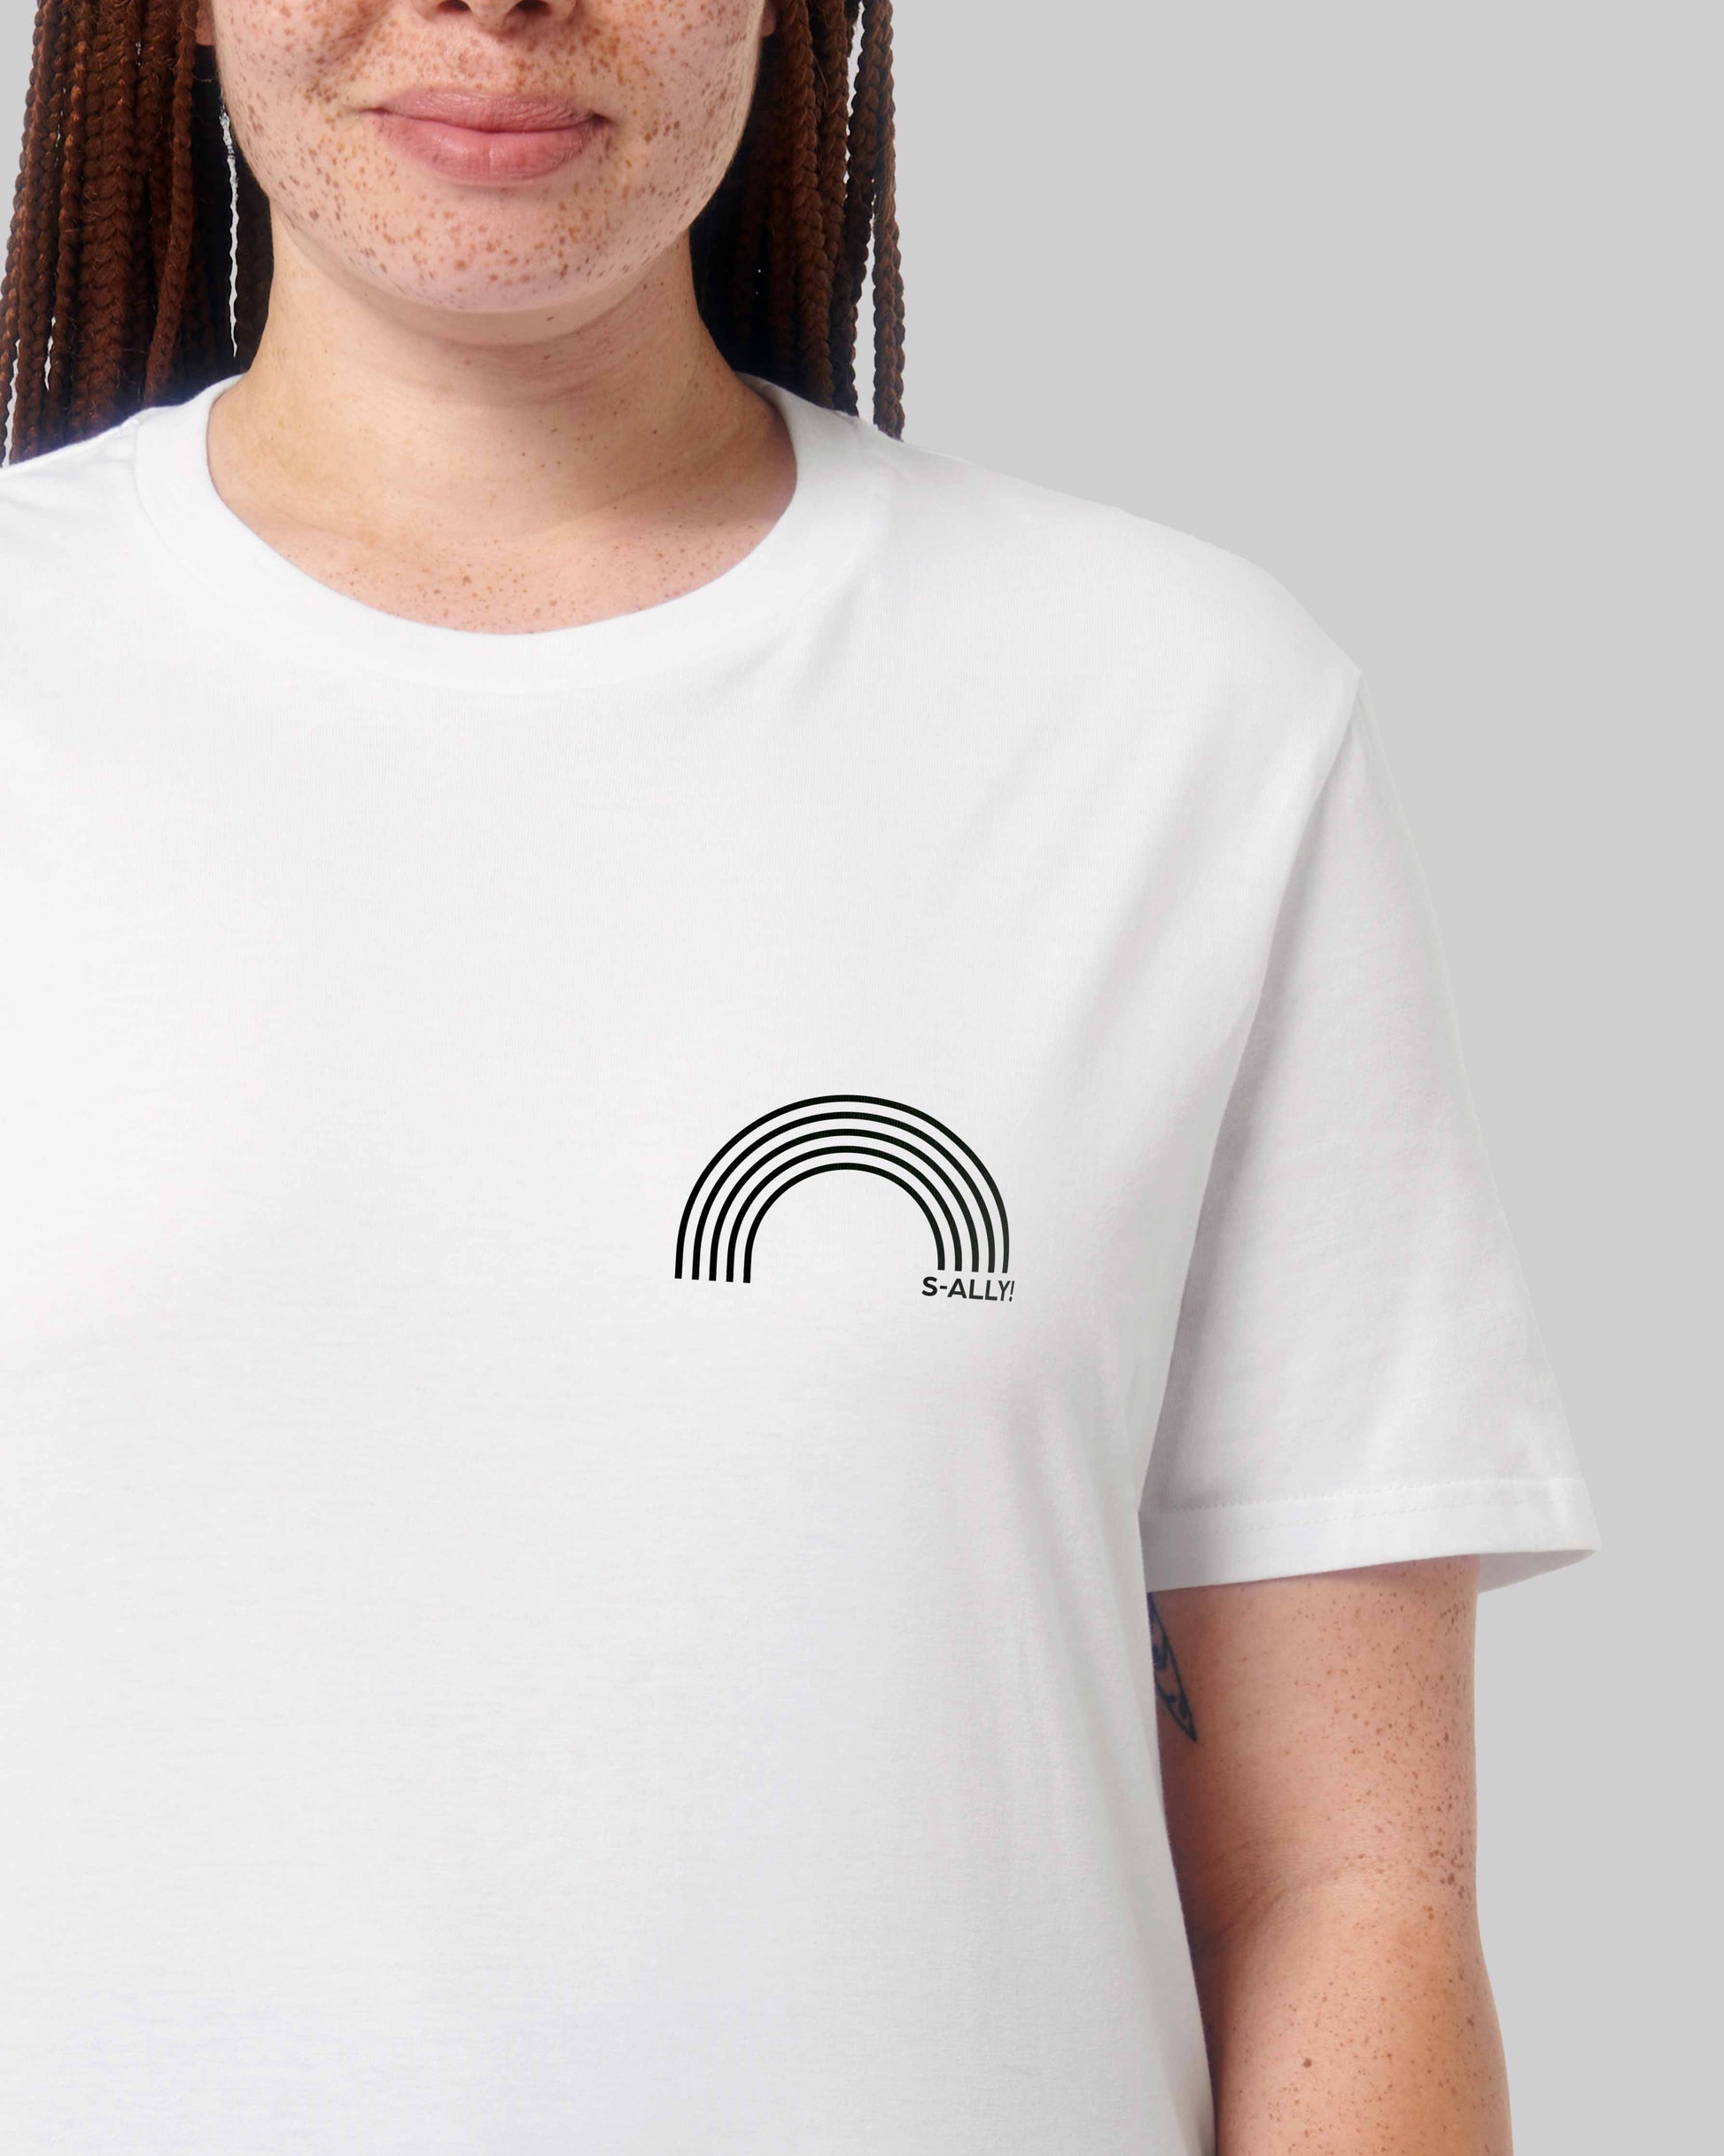 EINHORST® unisex Organic Shirt in Weiß mit dem Motiv "s-ally Regenbogen" in der Kombination schwarzer Regenbogen mit schwarzer Schrift, Bild von weiblicher Person mit Shirt